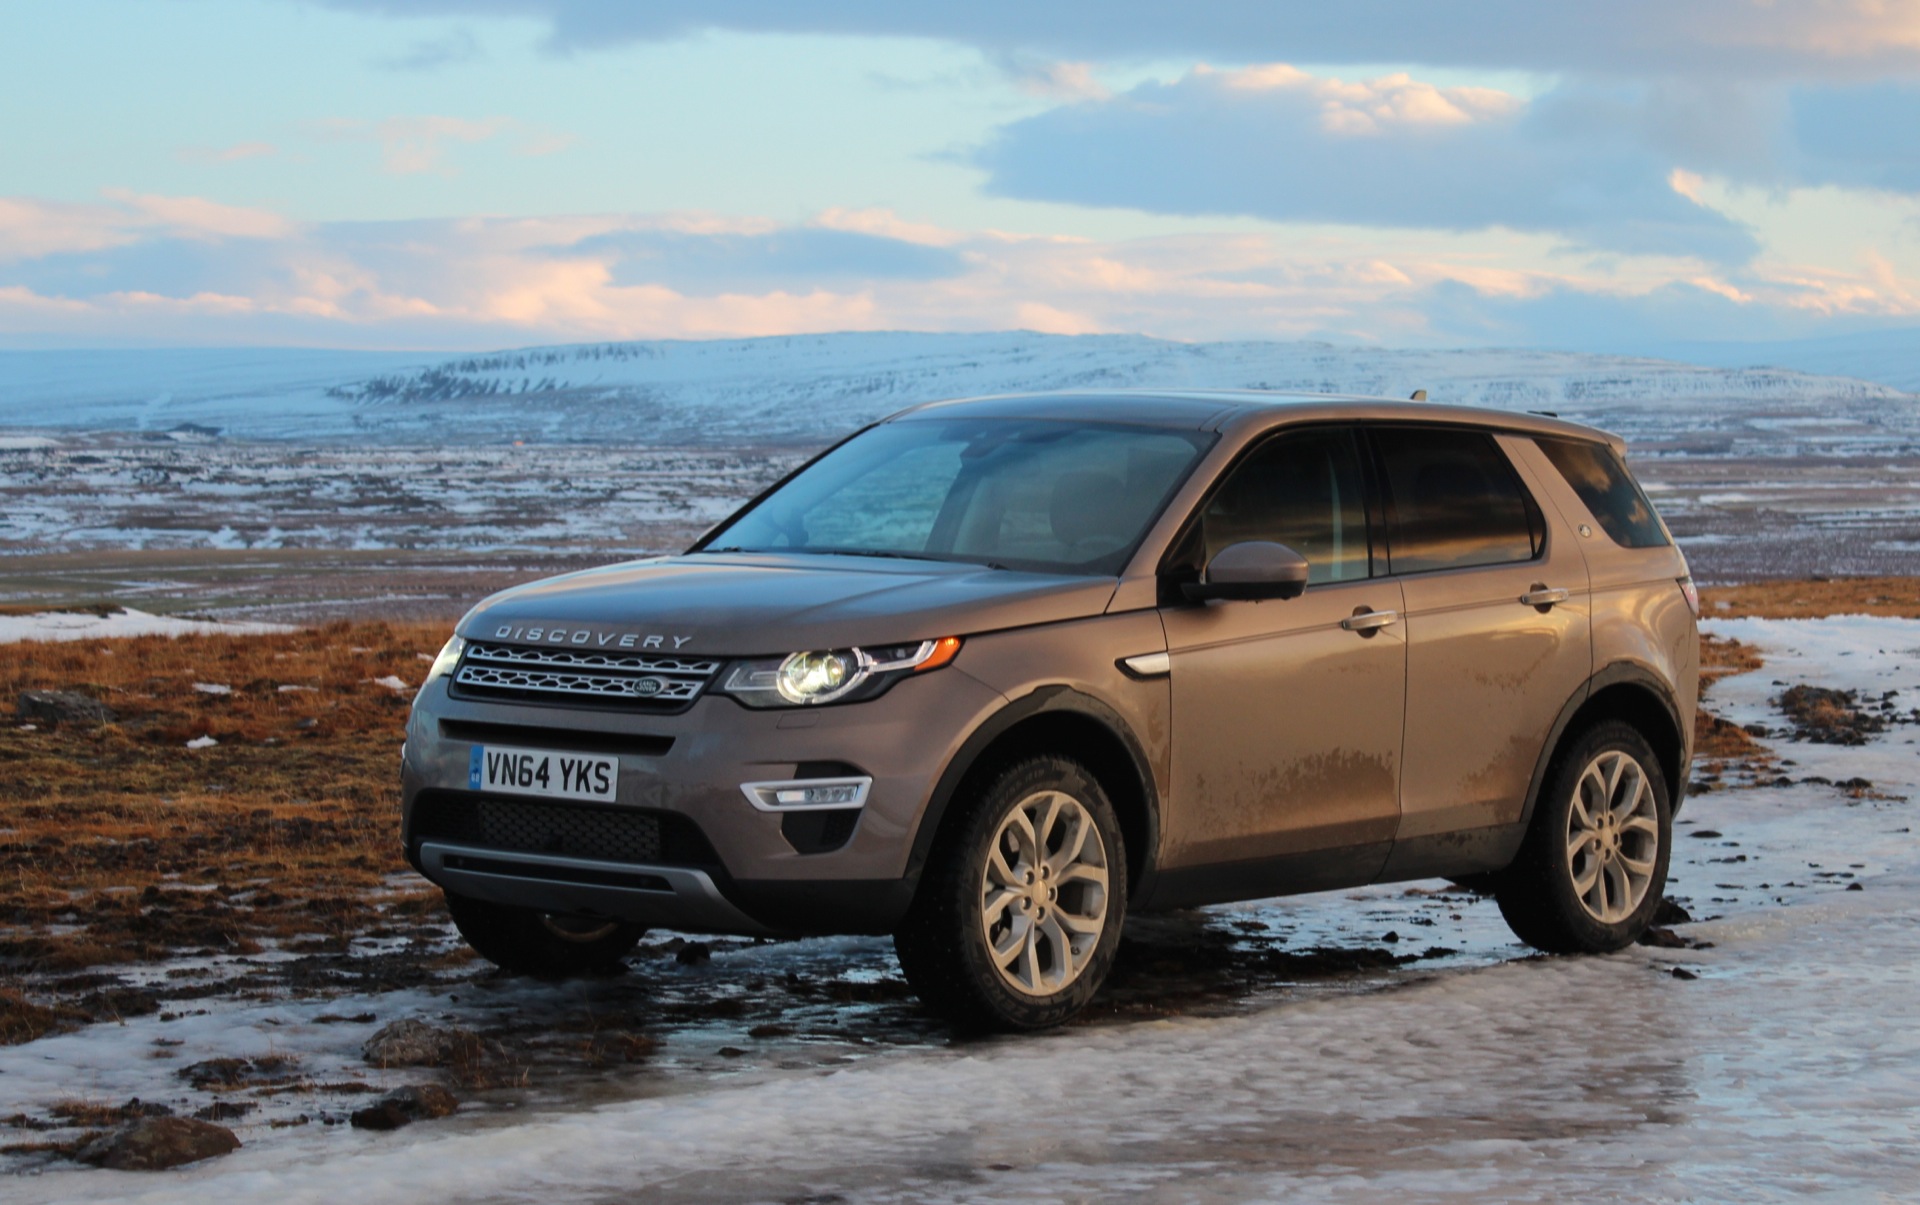 Belang Lijkt op Ingang 2016 Land Rover Discovery Sport first drive review